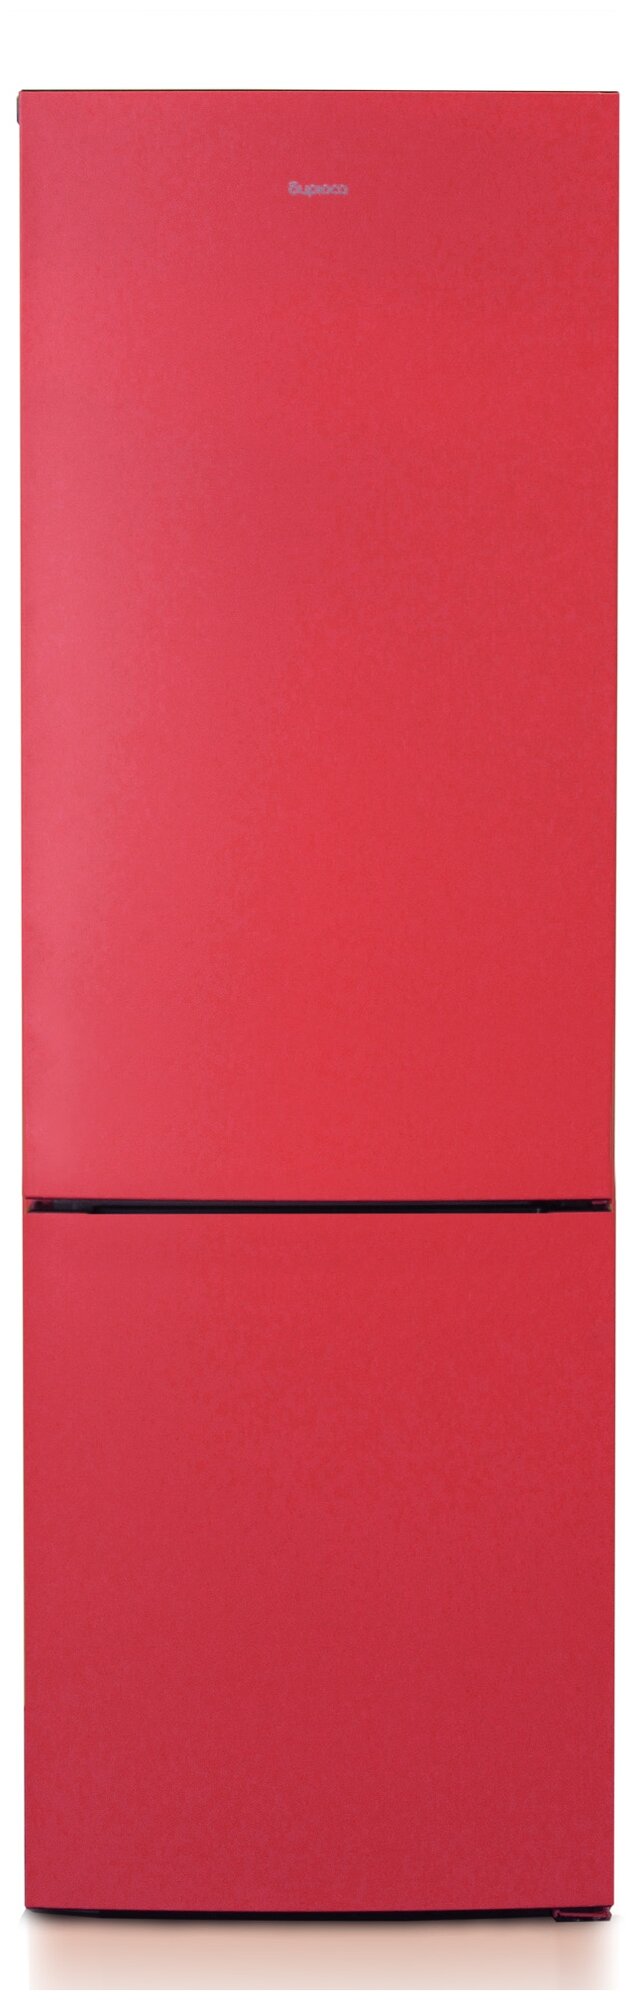 Холодильник Бирюса H6027, краcный - фотография № 1